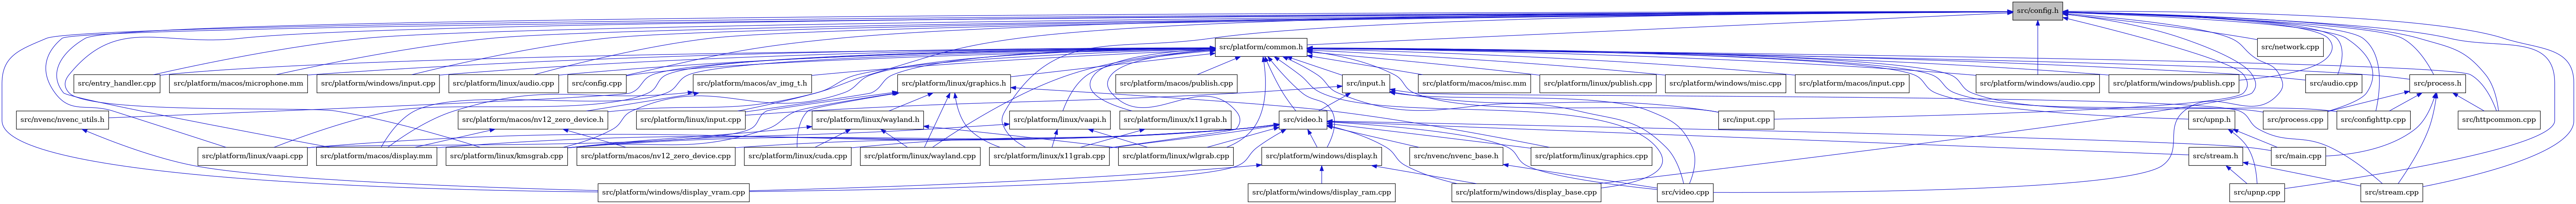 digraph {
    graph [bgcolor="#00000000"]
    node [shape=rectangle style=filled fillcolor="#FFFFFF" font=Helvetica padding=2]
    edge [color="#1414CE"]
    "39" [label="src/platform/macos/av_img_t.h" tooltip="src/platform/macos/av_img_t.h"]
    "12" [label="src/stream.cpp" tooltip="src/stream.cpp"]
    "33" [label="src/platform/linux/graphics.h" tooltip="src/platform/linux/graphics.h"]
    "20" [label="src/platform/linux/vaapi.cpp" tooltip="src/platform/linux/vaapi.cpp"]
    "15" [label="src/nvenc/nvenc_base.h" tooltip="src/nvenc/nvenc_base.h"]
    "19" [label="src/platform/linux/kmsgrab.cpp" tooltip="src/platform/linux/kmsgrab.cpp"]
    "25" [label="src/platform/windows/display.h" tooltip="src/platform/windows/display.h"]
    "5" [label="src/entry_handler.cpp" tooltip="src/entry_handler.cpp"]
    "41" [label="src/platform/macos/microphone.mm" tooltip="src/platform/macos/microphone.mm"]
    "46" [label="src/platform/windows/input.cpp" tooltip="src/platform/windows/input.cpp"]
    "31" [label="src/nvenc/nvenc_utils.h" tooltip="src/nvenc/nvenc_utils.h"]
    "30" [label="src/upnp.cpp" tooltip="src/upnp.cpp"]
    "13" [label="src/video.h" tooltip="src/video.h"]
    "7" [label="src/input.cpp" tooltip="src/input.cpp"]
    "32" [label="src/platform/linux/audio.cpp" tooltip="src/platform/linux/audio.cpp"]
    "11" [label="src/platform/linux/input.cpp" tooltip="src/platform/linux/input.cpp"]
    "28" [label="src/platform/windows/display_vram.cpp" tooltip="src/platform/windows/display_vram.cpp"]
    "1" [label="src/config.h" tooltip="src/config.h" fillcolor="#BFBFBF"]
    "22" [label="src/platform/linux/x11grab.cpp" tooltip="src/platform/linux/x11grab.cpp"]
    "9" [label="src/platform/common.h" tooltip="src/platform/common.h"]
    "37" [label="src/platform/linux/vaapi.h" tooltip="src/platform/linux/vaapi.h"]
    "3" [label="src/config.cpp" tooltip="src/config.cpp"]
    "10" [label="src/input.h" tooltip="src/input.h"]
    "27" [label="src/platform/windows/display_base.cpp" tooltip="src/platform/windows/display_base.cpp"]
    "35" [label="src/platform/linux/wayland.cpp" tooltip="src/platform/linux/wayland.cpp"]
    "50" [label="src/process.h" tooltip="src/process.h"]
    "26" [label="src/platform/windows/display_ram.cpp" tooltip="src/platform/windows/display_ram.cpp"]
    "8" [label="src/network.cpp" tooltip="src/network.cpp"]
    "45" [label="src/platform/windows/audio.cpp" tooltip="src/platform/windows/audio.cpp"]
    "49" [label="src/process.cpp" tooltip="src/process.cpp"]
    "18" [label="src/platform/linux/cuda.cpp" tooltip="src/platform/linux/cuda.cpp"]
    "14" [label="src/main.cpp" tooltip="src/main.cpp"]
    "51" [label="src/upnp.h" tooltip="src/upnp.h"]
    "40" [label="src/platform/macos/nv12_zero_device.h" tooltip="src/platform/macos/nv12_zero_device.h"]
    "43" [label="src/platform/macos/misc.mm" tooltip="src/platform/macos/misc.mm"]
    "36" [label="src/platform/linux/publish.cpp" tooltip="src/platform/linux/publish.cpp"]
    "47" [label="src/platform/windows/misc.cpp" tooltip="src/platform/windows/misc.cpp"]
    "29" [label="src/stream.h" tooltip="src/stream.h"]
    "42" [label="src/platform/macos/input.cpp" tooltip="src/platform/macos/input.cpp"]
    "4" [label="src/confighttp.cpp" tooltip="src/confighttp.cpp"]
    "48" [label="src/platform/windows/publish.cpp" tooltip="src/platform/windows/publish.cpp"]
    "2" [label="src/audio.cpp" tooltip="src/audio.cpp"]
    "16" [label="src/video.cpp" tooltip="src/video.cpp"]
    "24" [label="src/platform/macos/nv12_zero_device.cpp" tooltip="src/platform/macos/nv12_zero_device.cpp"]
    "17" [label="src/platform/linux/graphics.cpp" tooltip="src/platform/linux/graphics.cpp"]
    "44" [label="src/platform/macos/publish.cpp" tooltip="src/platform/macos/publish.cpp"]
    "6" [label="src/httpcommon.cpp" tooltip="src/httpcommon.cpp"]
    "21" [label="src/platform/linux/wlgrab.cpp" tooltip="src/platform/linux/wlgrab.cpp"]
    "23" [label="src/platform/macos/display.mm" tooltip="src/platform/macos/display.mm"]
    "38" [label="src/platform/linux/x11grab.h" tooltip="src/platform/linux/x11grab.h"]
    "34" [label="src/platform/linux/wayland.h" tooltip="src/platform/linux/wayland.h"]
    "39" -> "23" [dir=back tooltip="include"]
    "39" -> "40" [dir=back tooltip="include"]
    "33" -> "17" [dir=back tooltip="include"]
    "33" -> "18" [dir=back tooltip="include"]
    "33" -> "19" [dir=back tooltip="include"]
    "33" -> "20" [dir=back tooltip="include"]
    "33" -> "34" [dir=back tooltip="include"]
    "33" -> "35" [dir=back tooltip="include"]
    "33" -> "22" [dir=back tooltip="include"]
    "15" -> "16" [dir=back tooltip="include"]
    "25" -> "26" [dir=back tooltip="include"]
    "25" -> "27" [dir=back tooltip="include"]
    "25" -> "28" [dir=back tooltip="include"]
    "31" -> "28" [dir=back tooltip="include"]
    "13" -> "14" [dir=back tooltip="include"]
    "13" -> "15" [dir=back tooltip="include"]
    "13" -> "17" [dir=back tooltip="include"]
    "13" -> "18" [dir=back tooltip="include"]
    "13" -> "19" [dir=back tooltip="include"]
    "13" -> "20" [dir=back tooltip="include"]
    "13" -> "21" [dir=back tooltip="include"]
    "13" -> "22" [dir=back tooltip="include"]
    "13" -> "23" [dir=back tooltip="include"]
    "13" -> "24" [dir=back tooltip="include"]
    "13" -> "25" [dir=back tooltip="include"]
    "13" -> "27" [dir=back tooltip="include"]
    "13" -> "28" [dir=back tooltip="include"]
    "13" -> "29" [dir=back tooltip="include"]
    "13" -> "16" [dir=back tooltip="include"]
    "1" -> "2" [dir=back tooltip="include"]
    "1" -> "3" [dir=back tooltip="include"]
    "1" -> "4" [dir=back tooltip="include"]
    "1" -> "5" [dir=back tooltip="include"]
    "1" -> "6" [dir=back tooltip="include"]
    "1" -> "7" [dir=back tooltip="include"]
    "1" -> "8" [dir=back tooltip="include"]
    "1" -> "9" [dir=back tooltip="include"]
    "1" -> "32" [dir=back tooltip="include"]
    "1" -> "19" [dir=back tooltip="include"]
    "1" -> "11" [dir=back tooltip="include"]
    "1" -> "20" [dir=back tooltip="include"]
    "1" -> "22" [dir=back tooltip="include"]
    "1" -> "23" [dir=back tooltip="include"]
    "1" -> "41" [dir=back tooltip="include"]
    "1" -> "45" [dir=back tooltip="include"]
    "1" -> "27" [dir=back tooltip="include"]
    "1" -> "46" [dir=back tooltip="include"]
    "1" -> "28" [dir=back tooltip="include"]
    "1" -> "48" [dir=back tooltip="include"]
    "1" -> "49" [dir=back tooltip="include"]
    "1" -> "50" [dir=back tooltip="include"]
    "1" -> "12" [dir=back tooltip="include"]
    "1" -> "30" [dir=back tooltip="include"]
    "1" -> "16" [dir=back tooltip="include"]
    "9" -> "2" [dir=back tooltip="include"]
    "9" -> "3" [dir=back tooltip="include"]
    "9" -> "4" [dir=back tooltip="include"]
    "9" -> "5" [dir=back tooltip="include"]
    "9" -> "6" [dir=back tooltip="include"]
    "9" -> "10" [dir=back tooltip="include"]
    "9" -> "7" [dir=back tooltip="include"]
    "9" -> "31" [dir=back tooltip="include"]
    "9" -> "32" [dir=back tooltip="include"]
    "9" -> "33" [dir=back tooltip="include"]
    "9" -> "19" [dir=back tooltip="include"]
    "9" -> "11" [dir=back tooltip="include"]
    "9" -> "36" [dir=back tooltip="include"]
    "9" -> "20" [dir=back tooltip="include"]
    "9" -> "37" [dir=back tooltip="include"]
    "9" -> "35" [dir=back tooltip="include"]
    "9" -> "21" [dir=back tooltip="include"]
    "9" -> "38" [dir=back tooltip="include"]
    "9" -> "39" [dir=back tooltip="include"]
    "9" -> "22" [dir=back tooltip="include"]
    "9" -> "23" [dir=back tooltip="include"]
    "9" -> "41" [dir=back tooltip="include"]
    "9" -> "42" [dir=back tooltip="include"]
    "9" -> "43" [dir=back tooltip="include"]
    "9" -> "40" [dir=back tooltip="include"]
    "9" -> "44" [dir=back tooltip="include"]
    "9" -> "45" [dir=back tooltip="include"]
    "9" -> "25" [dir=back tooltip="include"]
    "9" -> "27" [dir=back tooltip="include"]
    "9" -> "46" [dir=back tooltip="include"]
    "9" -> "47" [dir=back tooltip="include"]
    "9" -> "48" [dir=back tooltip="include"]
    "9" -> "49" [dir=back tooltip="include"]
    "9" -> "50" [dir=back tooltip="include"]
    "9" -> "51" [dir=back tooltip="include"]
    "9" -> "13" [dir=back tooltip="include"]
    "9" -> "16" [dir=back tooltip="include"]
    "37" -> "19" [dir=back tooltip="include"]
    "37" -> "21" [dir=back tooltip="include"]
    "37" -> "22" [dir=back tooltip="include"]
    "10" -> "7" [dir=back tooltip="include"]
    "10" -> "11" [dir=back tooltip="include"]
    "10" -> "12" [dir=back tooltip="include"]
    "10" -> "13" [dir=back tooltip="include"]
    "10" -> "16" [dir=back tooltip="include"]
    "50" -> "4" [dir=back tooltip="include"]
    "50" -> "6" [dir=back tooltip="include"]
    "50" -> "14" [dir=back tooltip="include"]
    "50" -> "49" [dir=back tooltip="include"]
    "50" -> "12" [dir=back tooltip="include"]
    "51" -> "14" [dir=back tooltip="include"]
    "51" -> "30" [dir=back tooltip="include"]
    "40" -> "23" [dir=back tooltip="include"]
    "40" -> "24" [dir=back tooltip="include"]
    "29" -> "12" [dir=back tooltip="include"]
    "29" -> "30" [dir=back tooltip="include"]
    "38" -> "22" [dir=back tooltip="include"]
    "34" -> "18" [dir=back tooltip="include"]
    "34" -> "19" [dir=back tooltip="include"]
    "34" -> "35" [dir=back tooltip="include"]
    "34" -> "21" [dir=back tooltip="include"]
}